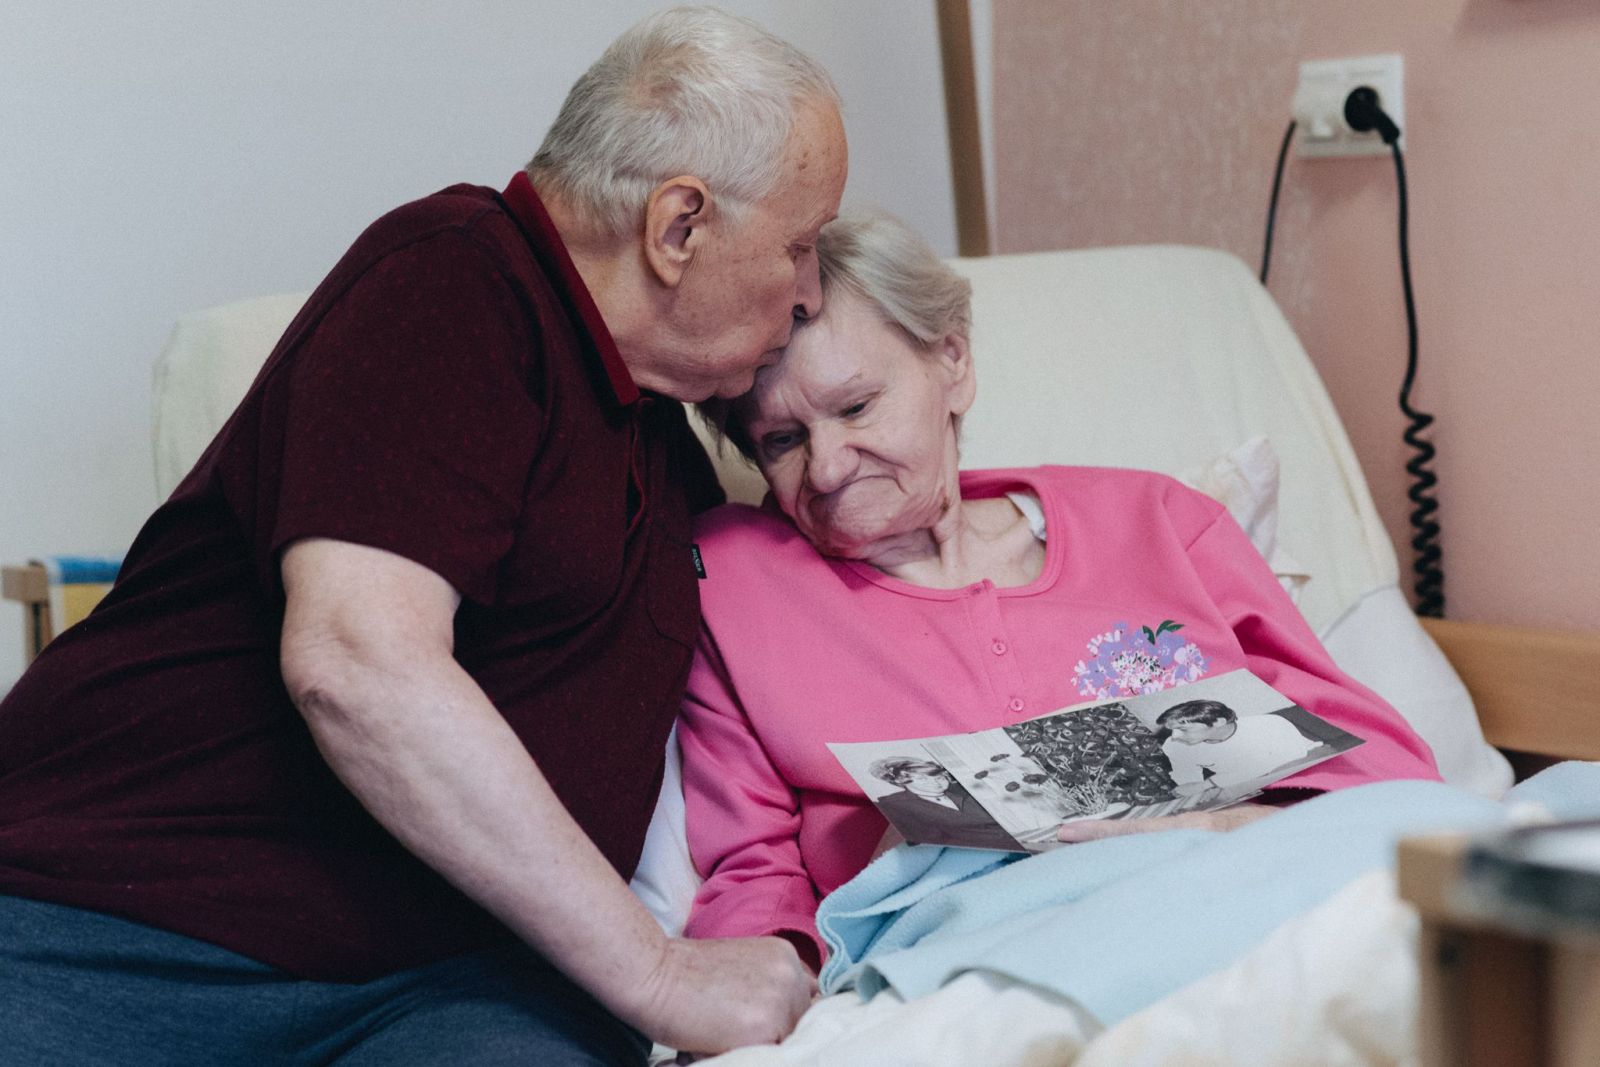 Zápisník jednej lásky v bratislavskom domove dôchodcov. Už 49 rokov žijú Mirko a Anička len jeden pre druhého